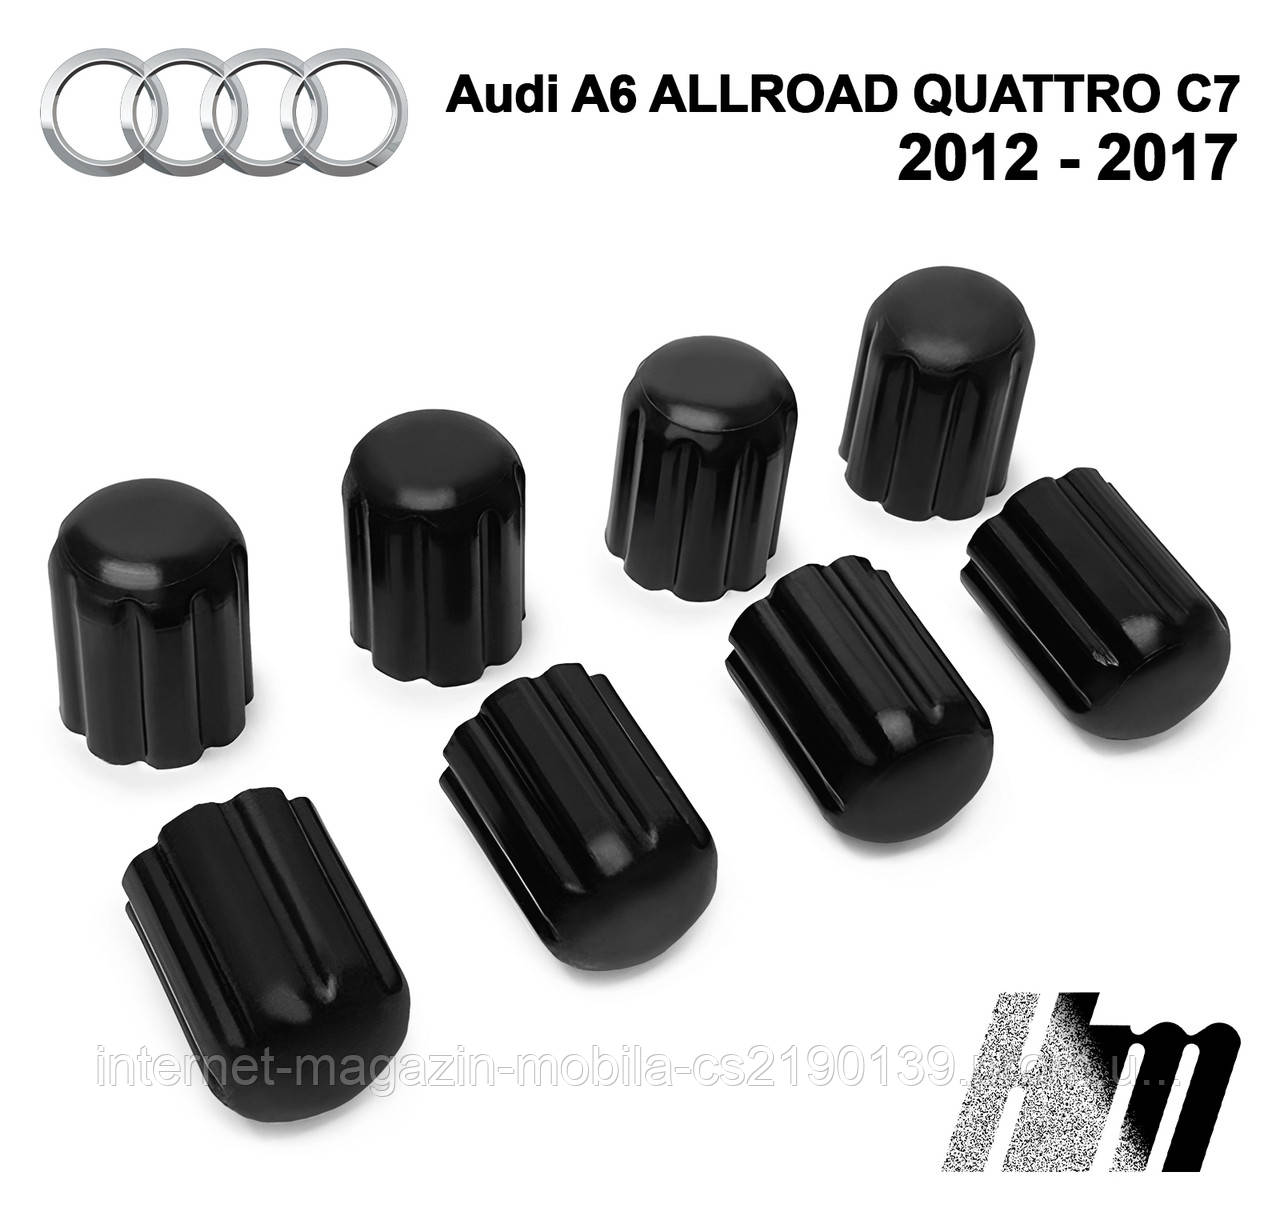 Ремкомплект обмежувача дверей Audi A6 ALLROAD QUATTRO C7 2012 — 2017, фіксатори, вкладки, втулки